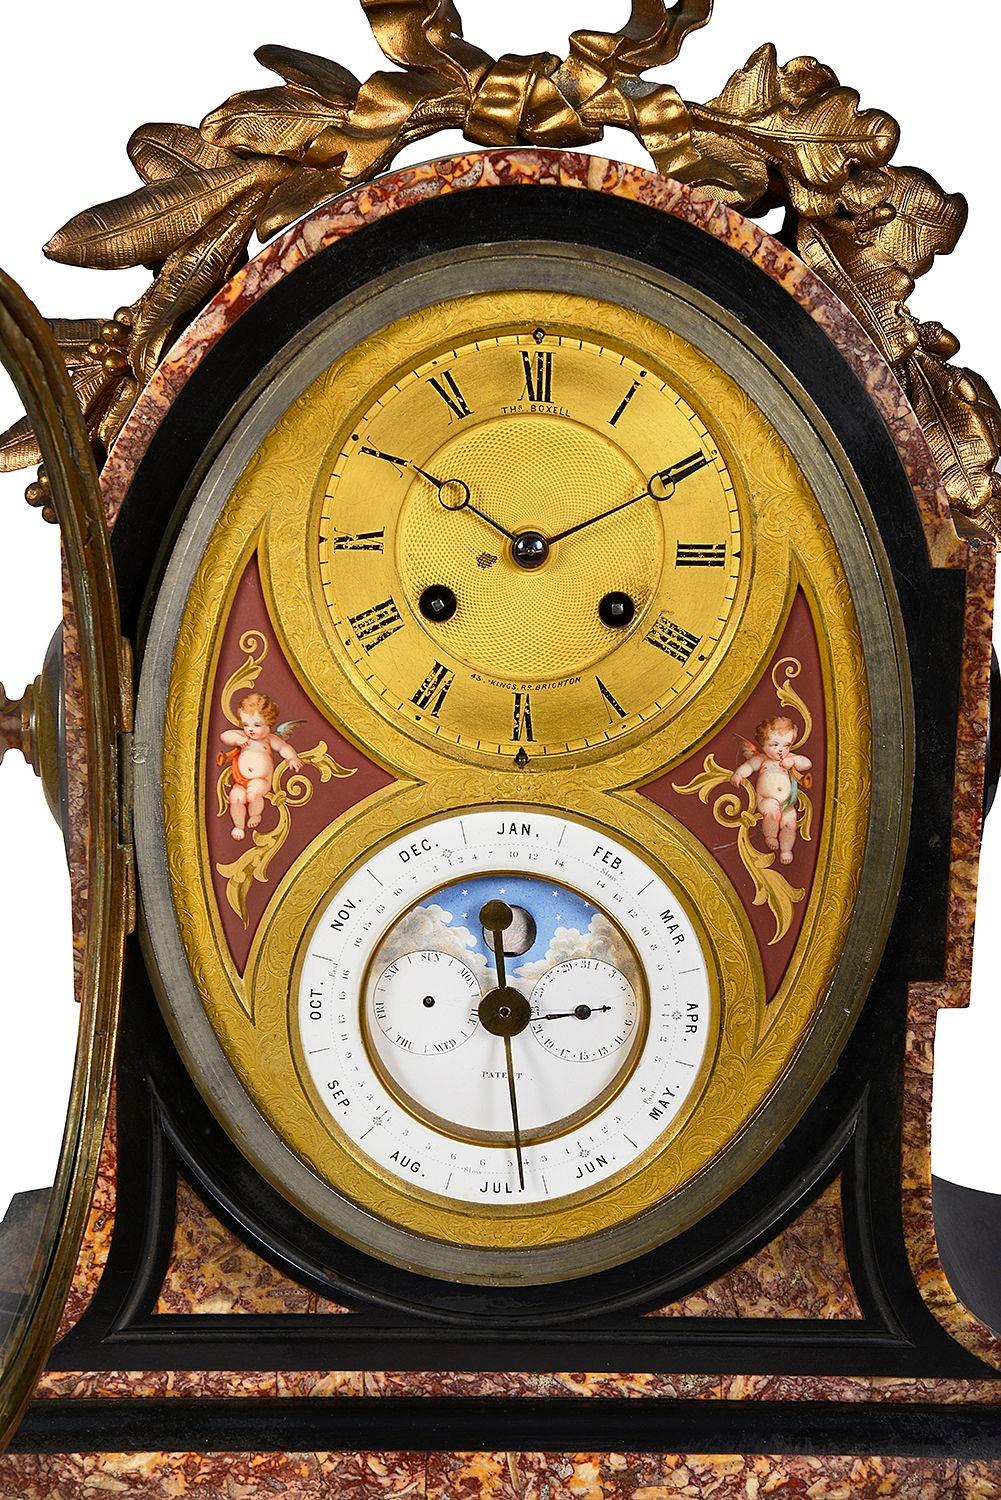 Eine sehr gute Qualität 19. Jahrhundert schwarz und rouge Marmor Mantel Uhr mit Kalender. Mit einem vergoldeten Ormolu foliate mount auf der Oberseite, eine vergoldete Zifferblatt mit einem acht Tag, Stunde und halbe Stunde schlagen Bewegung. Das